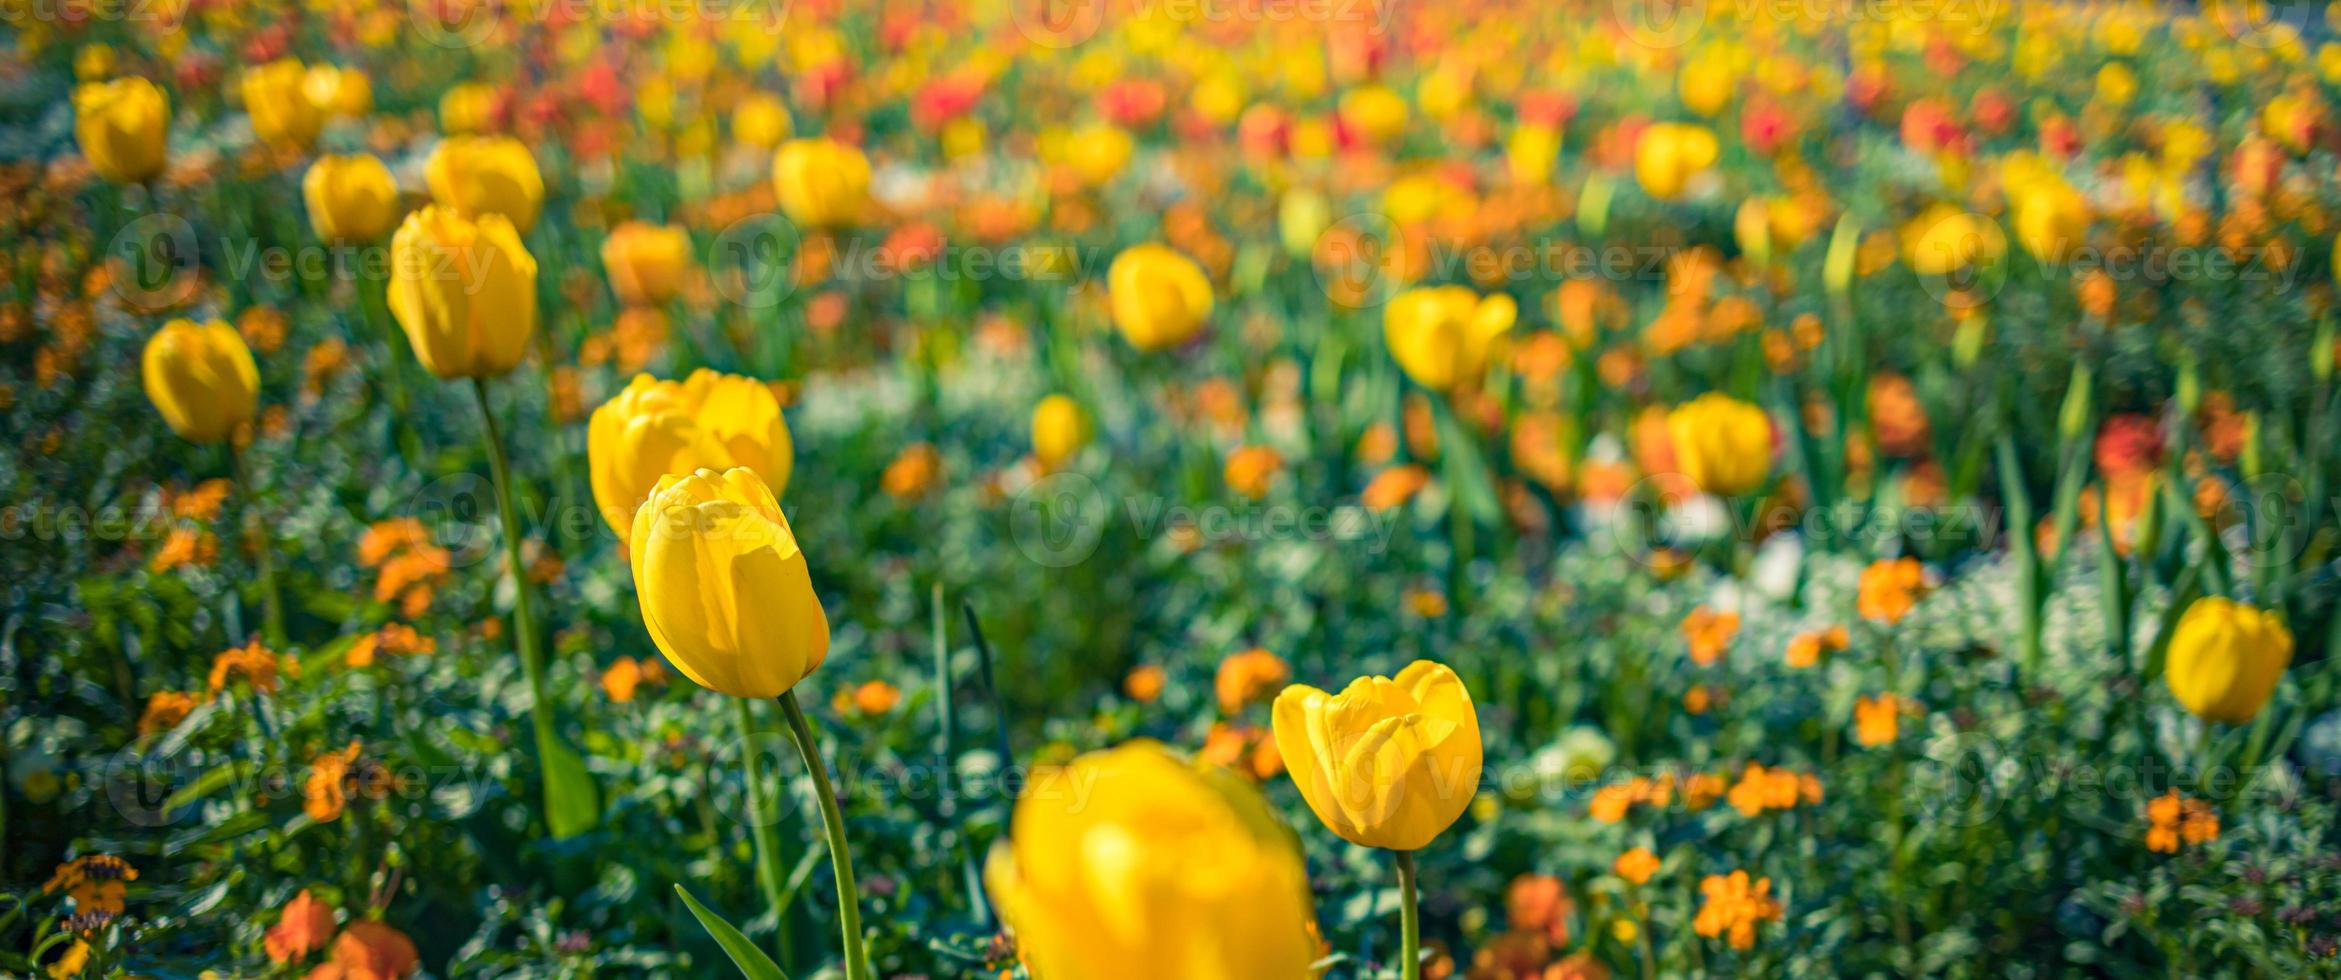 Frühlingshintergrund mit schönen gelben Tulpen. Blumenbanner des Stadtgartenparks. frühlingsblühende gelbe tulpen, bokeh-blumenhintergrund, pastell- und weiche blumenkarte, selektiver fokus, getönt foto